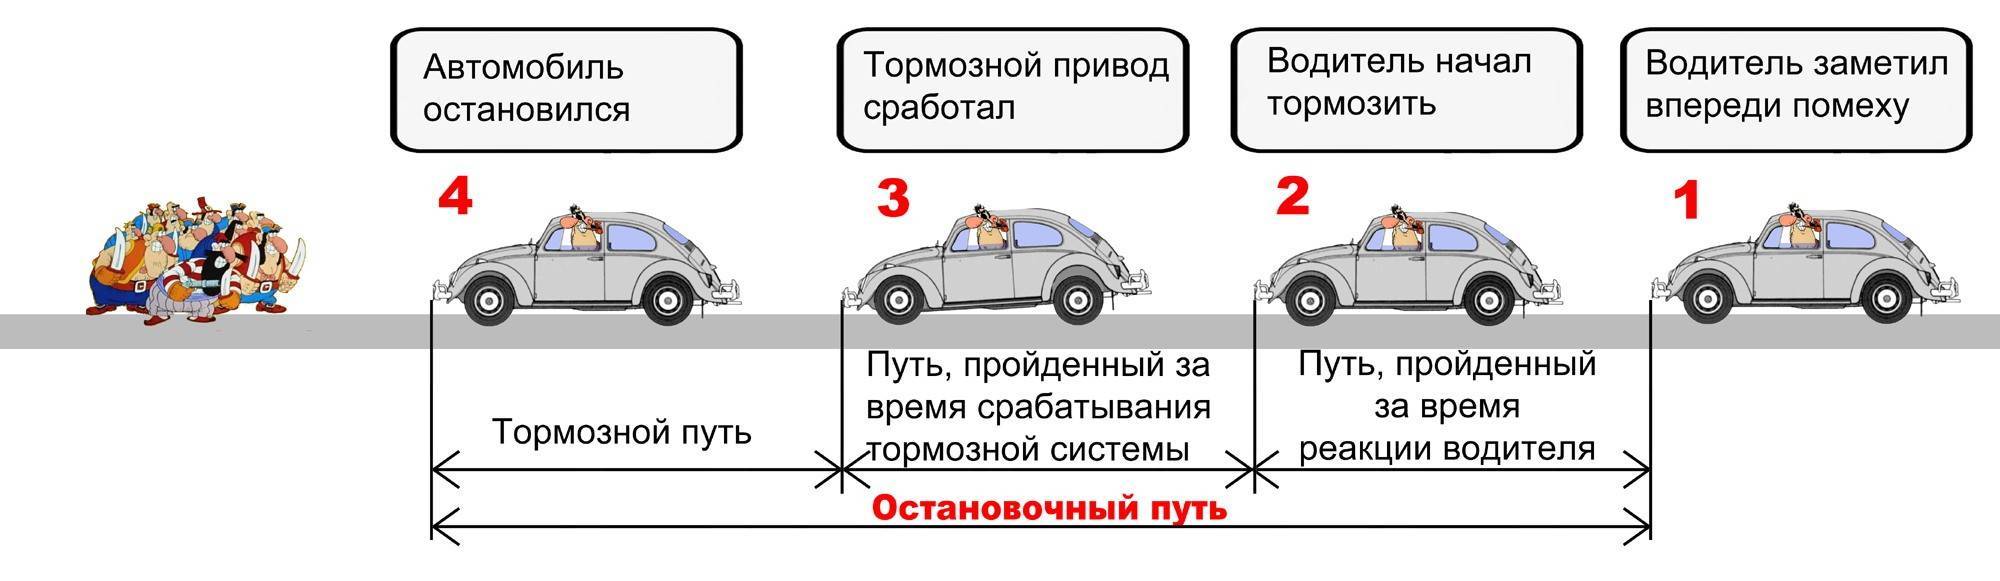 Автопарк учет автомобилей за кем закреплен километраж гараж подразделение водители путевки